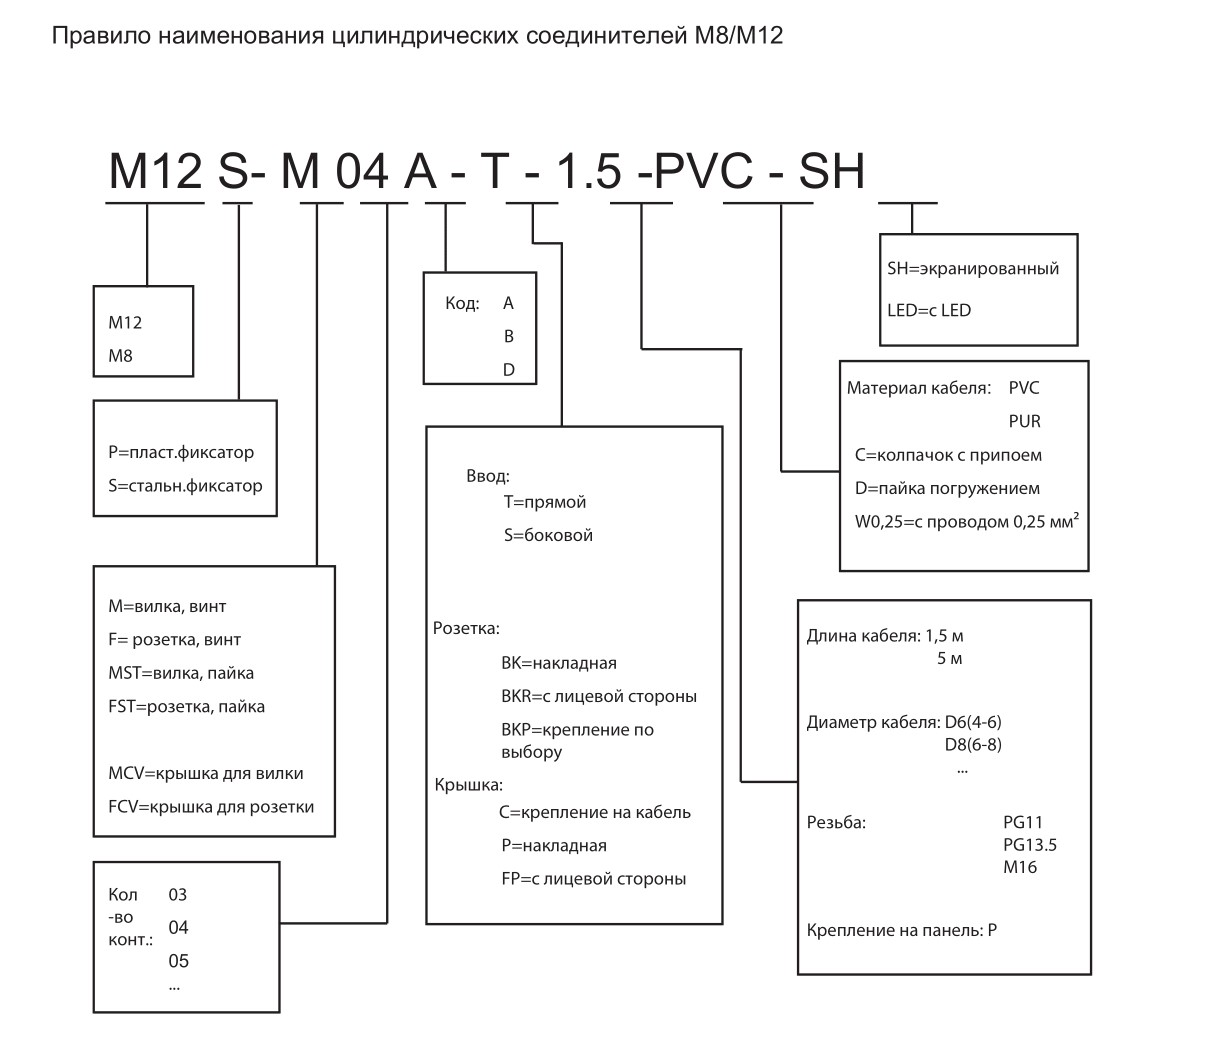 Цилиндрический соединитель-вилка с кабелем M12-M04D-BK-M16-PFN 1632043014022: Структура обозначения